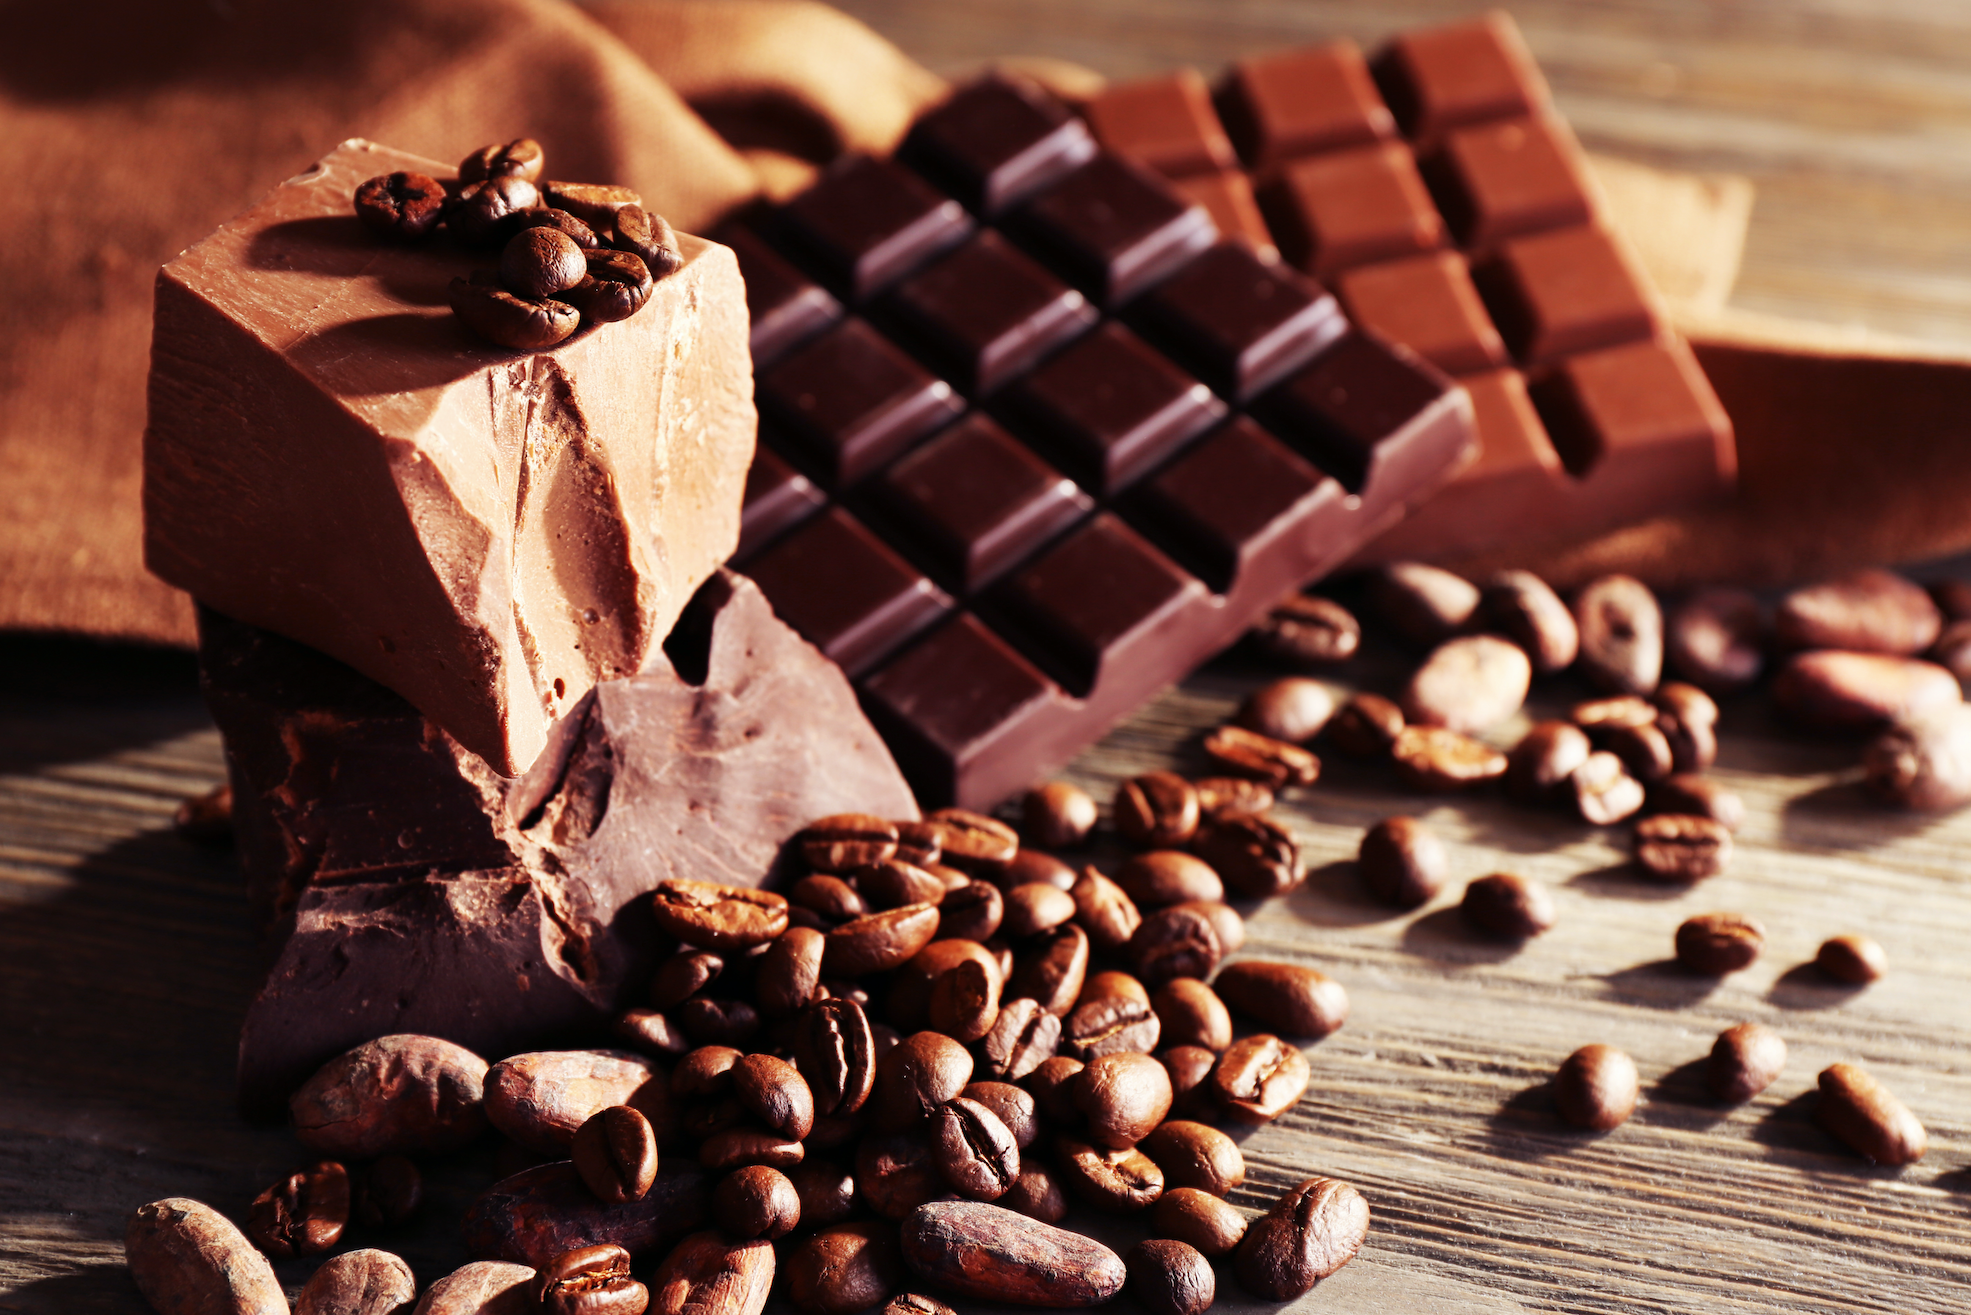 Coffee i chocolate. Кофе и шоколад. Кофе и плитка шоколада. Кофе с шоколадкой. Кофейные зерна в шоколаде.